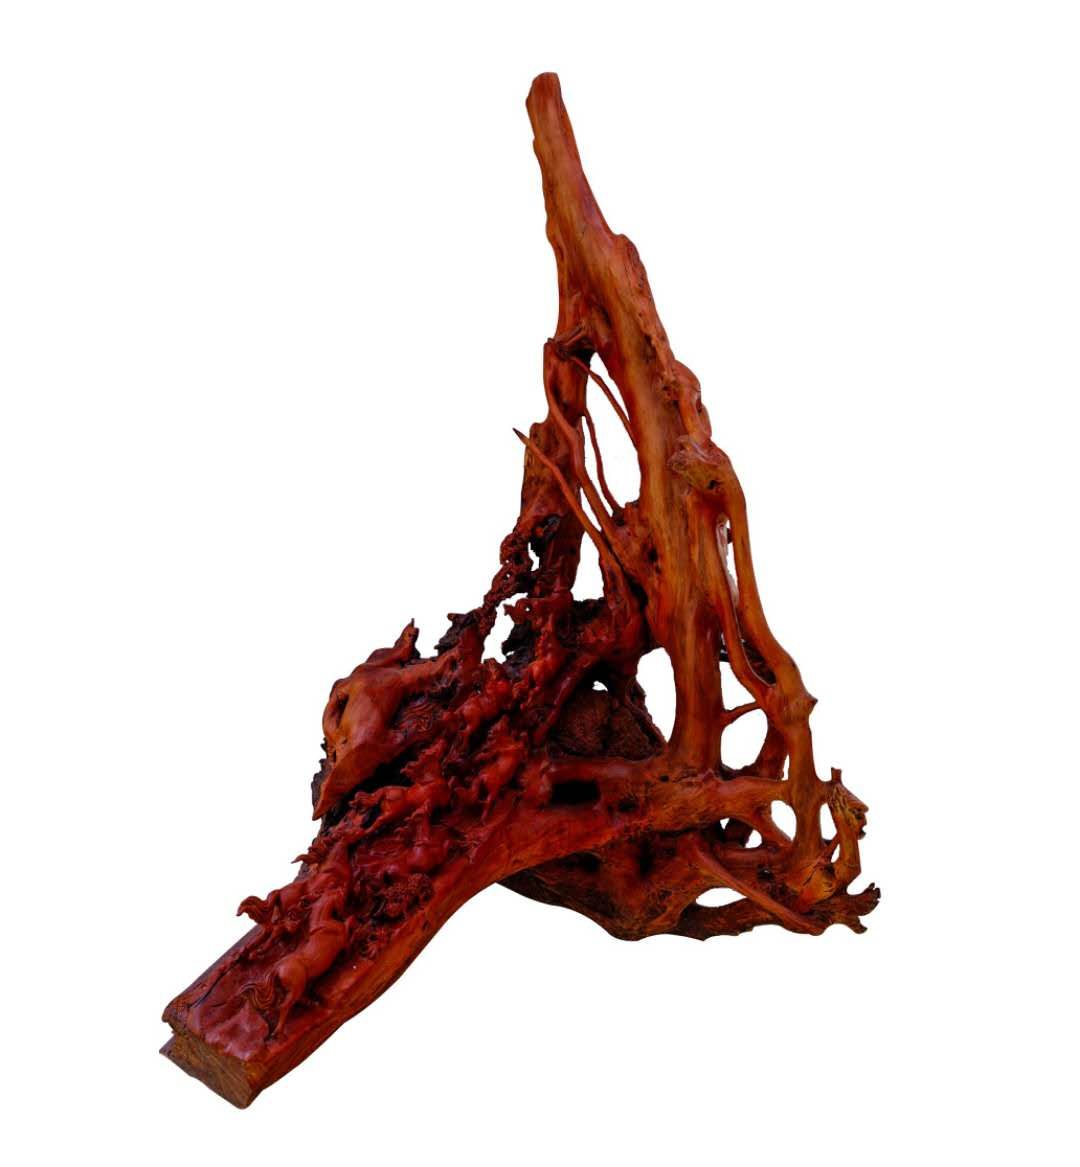 用红木做根雕工艺品要怎么去进行保养